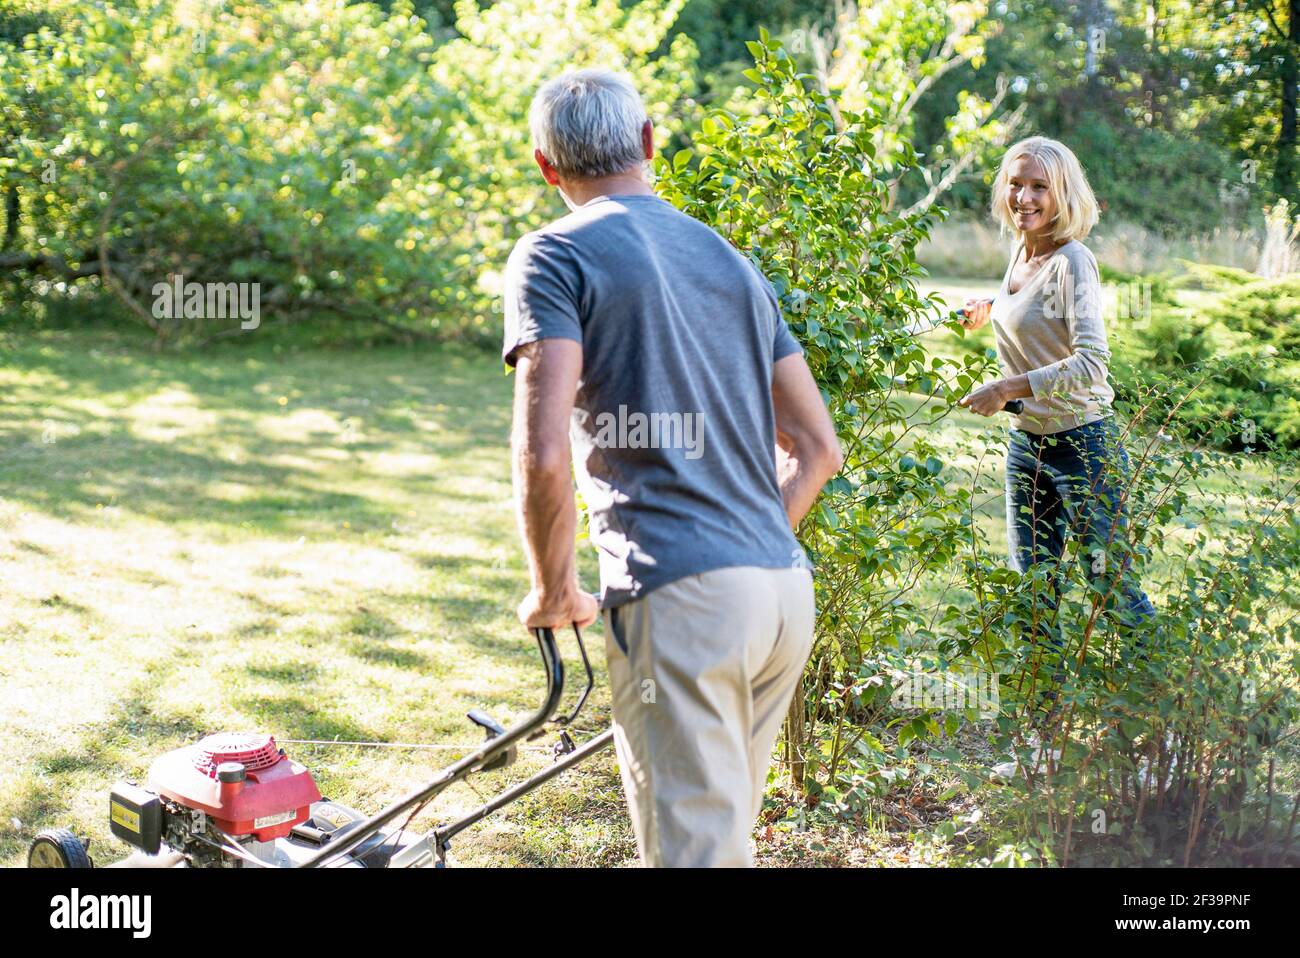 Glückliches reifes Paar, das Rasen mäht und Pflanzen im Hinterhof schneidet Stockfoto